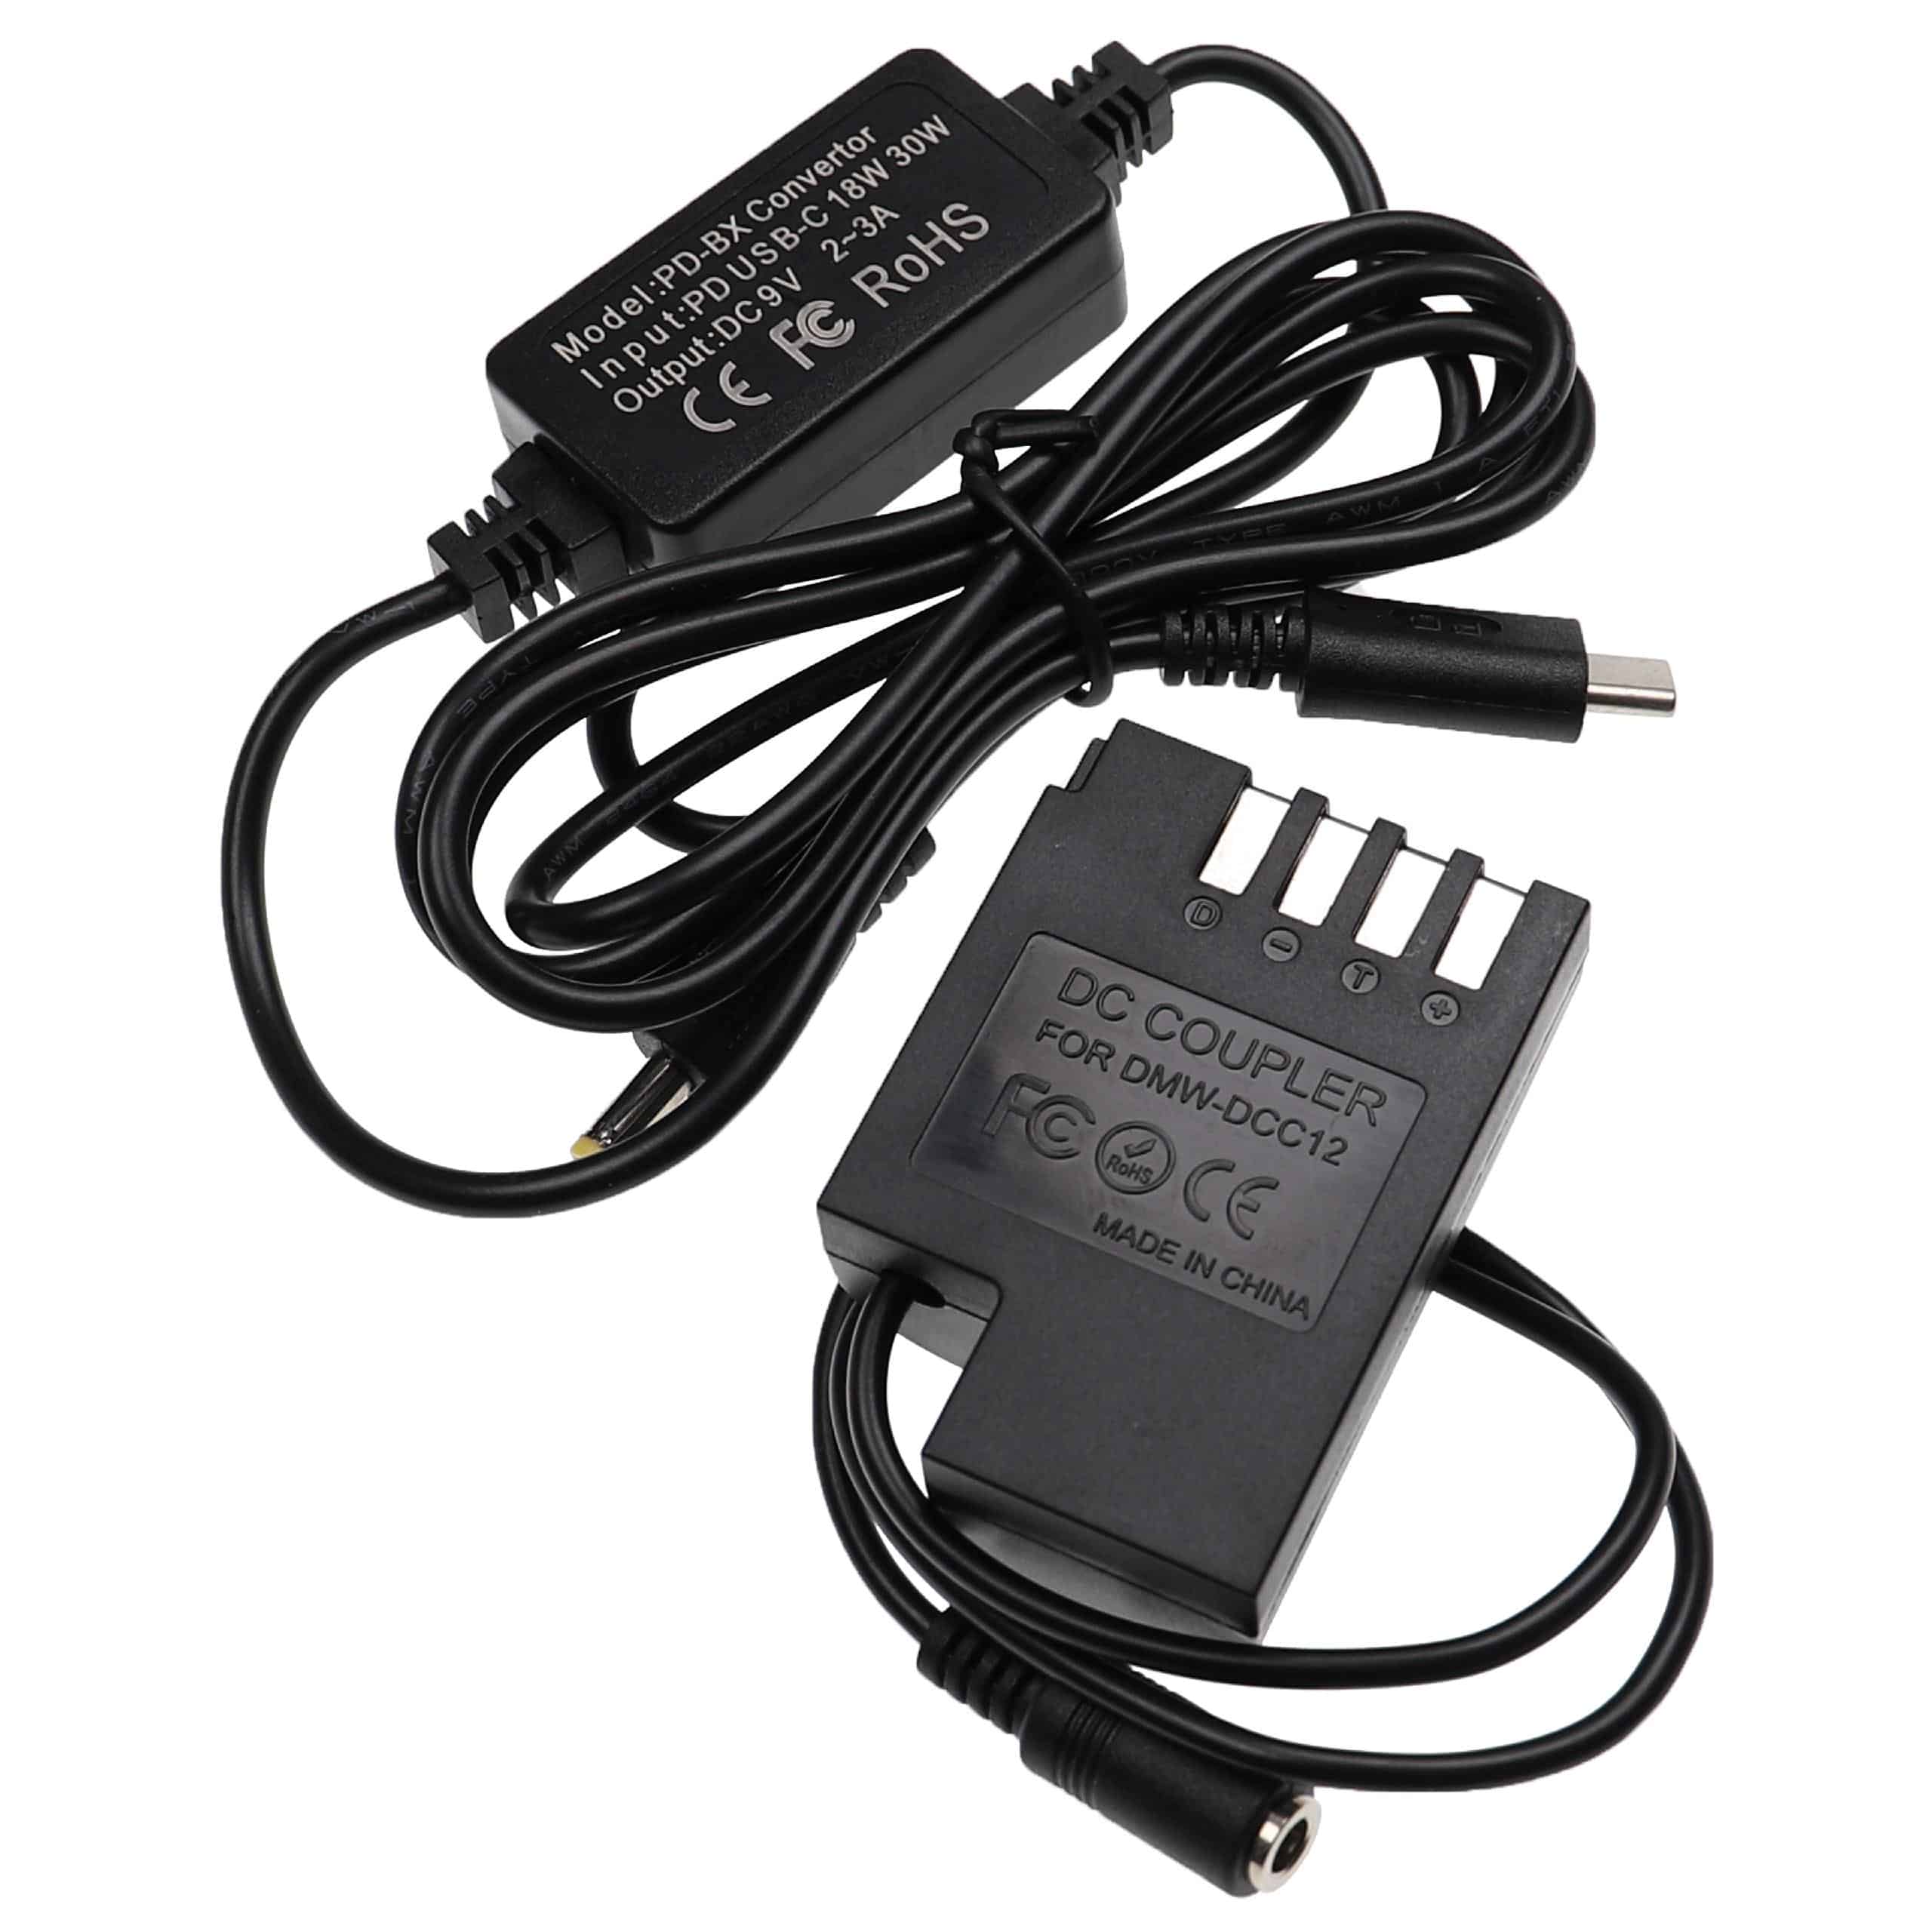 Alimentador USB C reemplaza Panasonic DMW-AC8 para cámara Panasonic + acoplador CC como Panasonic DMW-DCC12